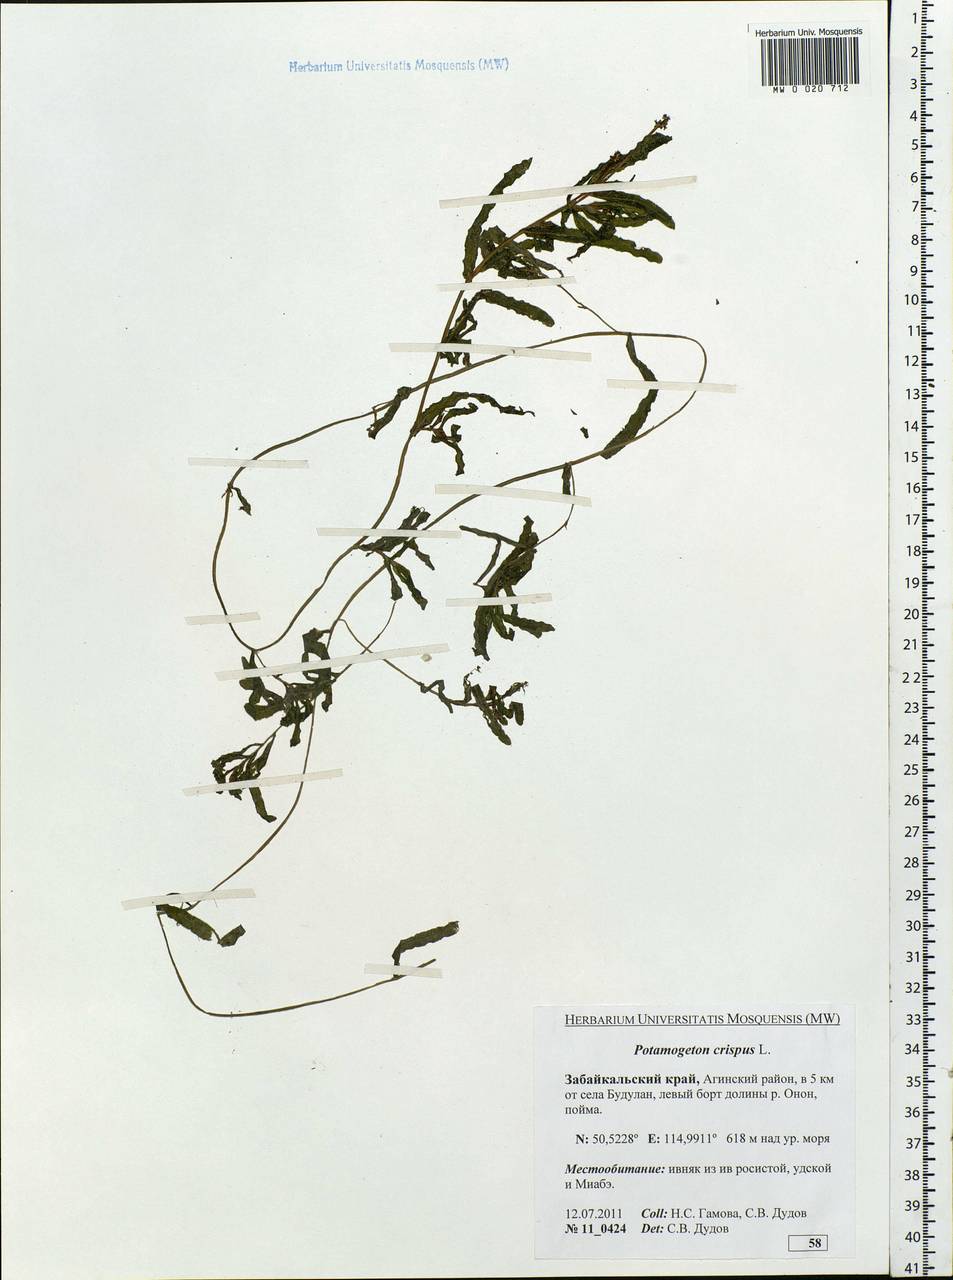 Potamogeton crispus L., Siberia, Baikal & Transbaikal region (S4) (Russia)